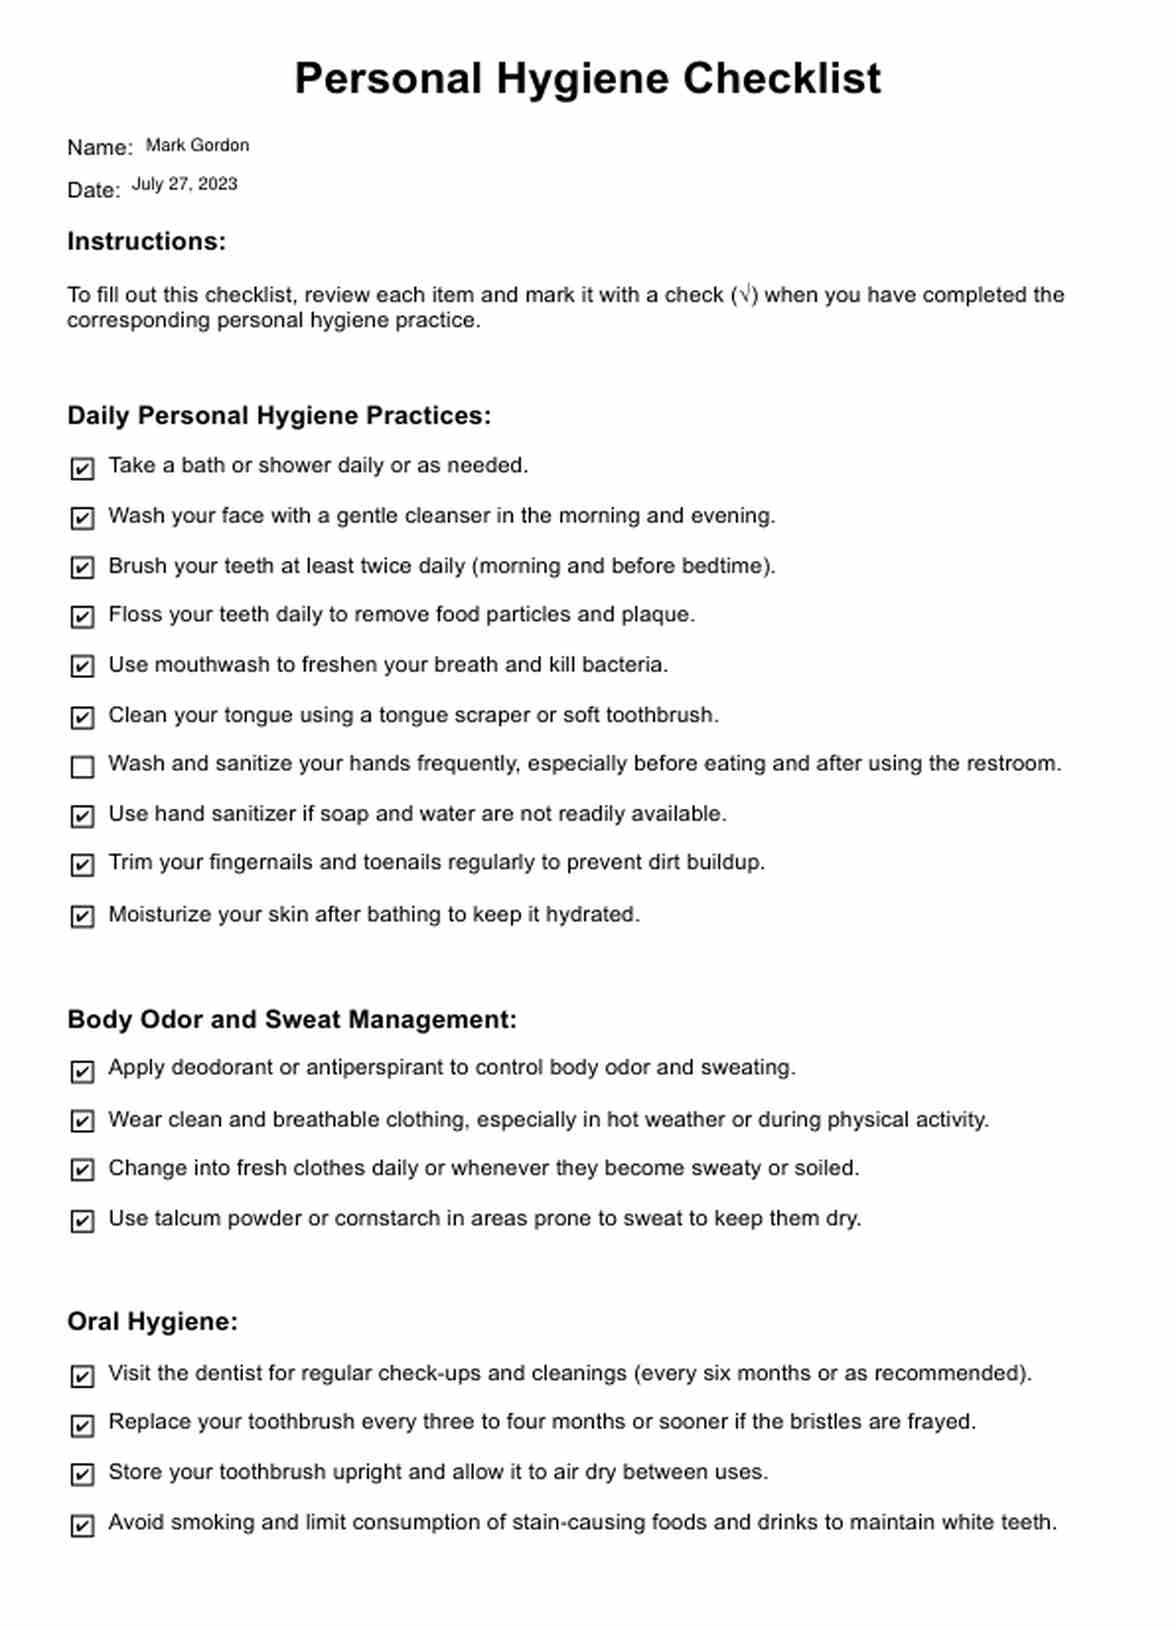 Checklist de Higiene Personal PDF Example